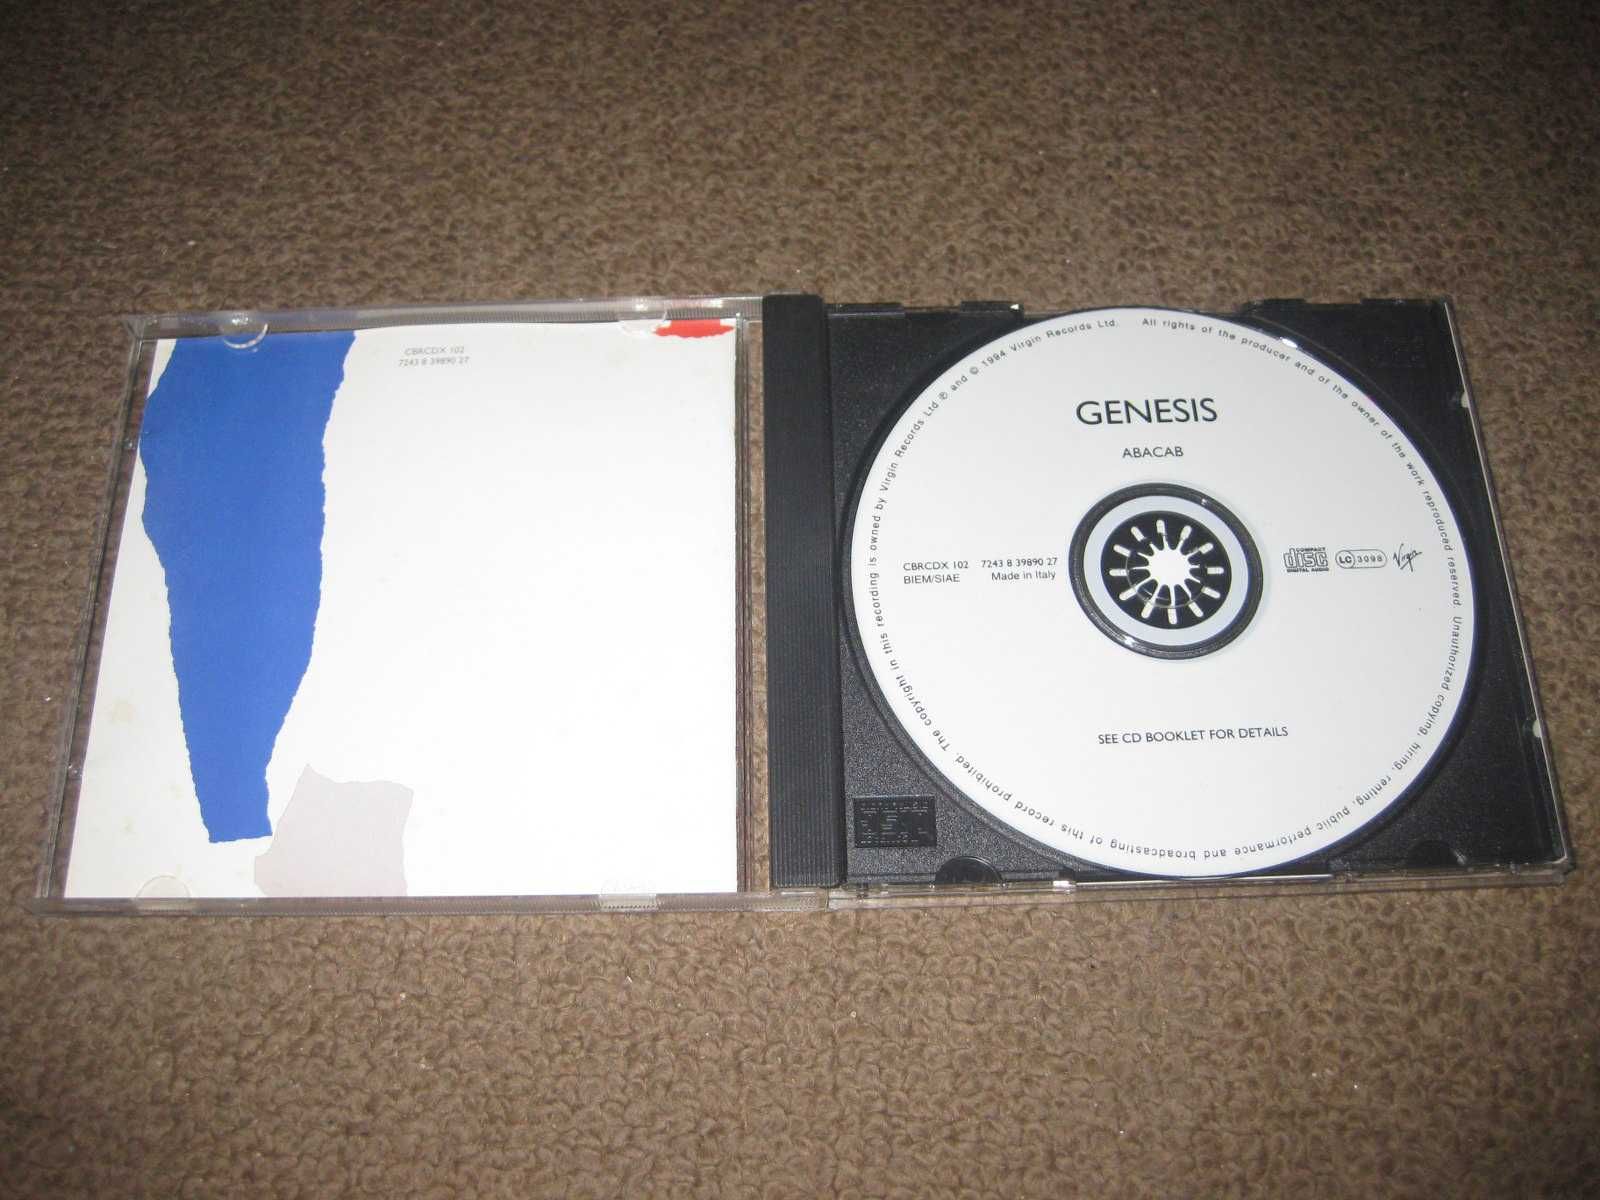 CD dos Genesis "Abacab" Portes Grátis!